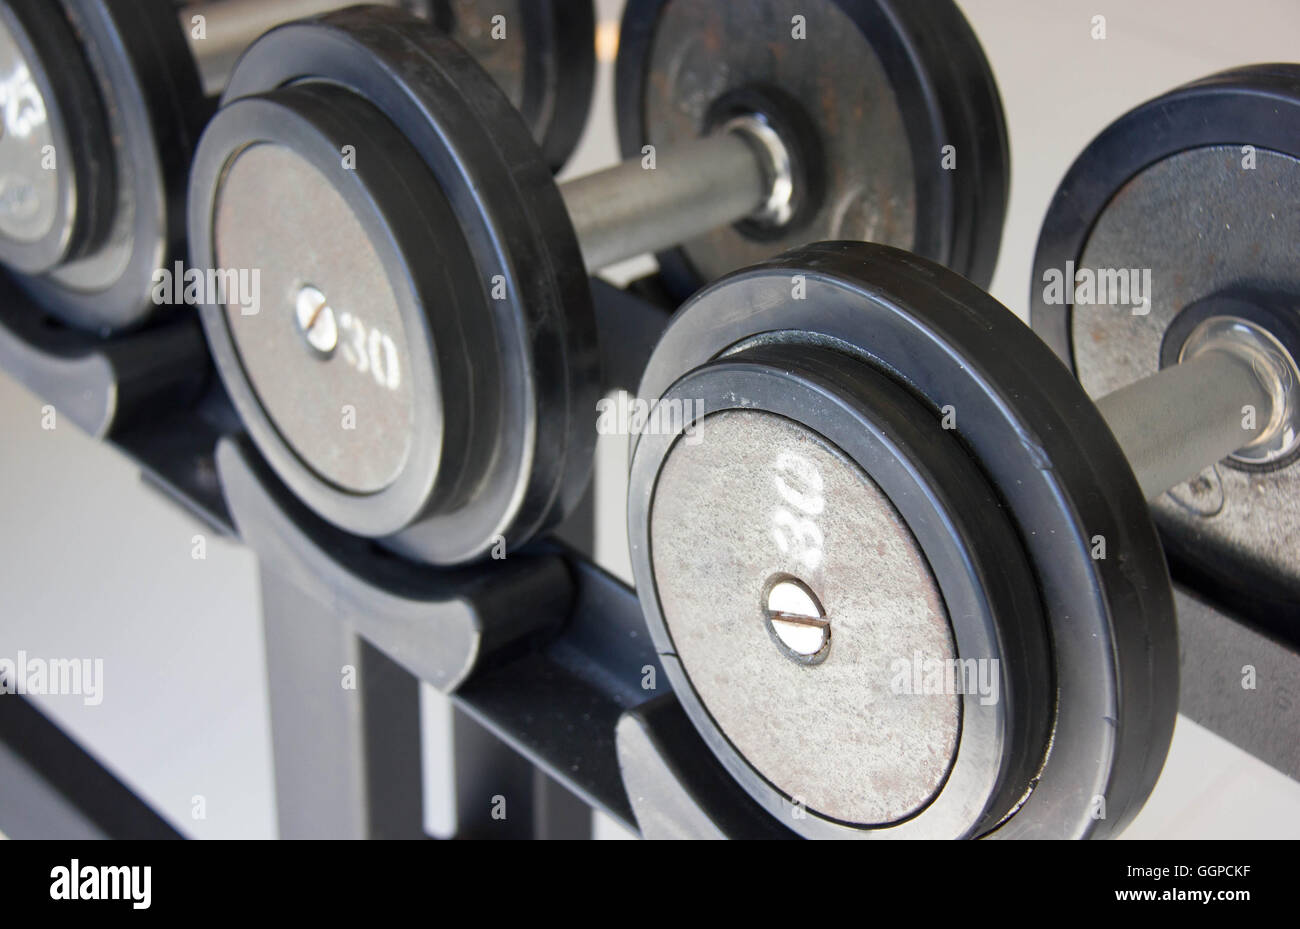 Chiudere l esercizio di Fitness attrezzatura pesi a manubrio. Foto Stock